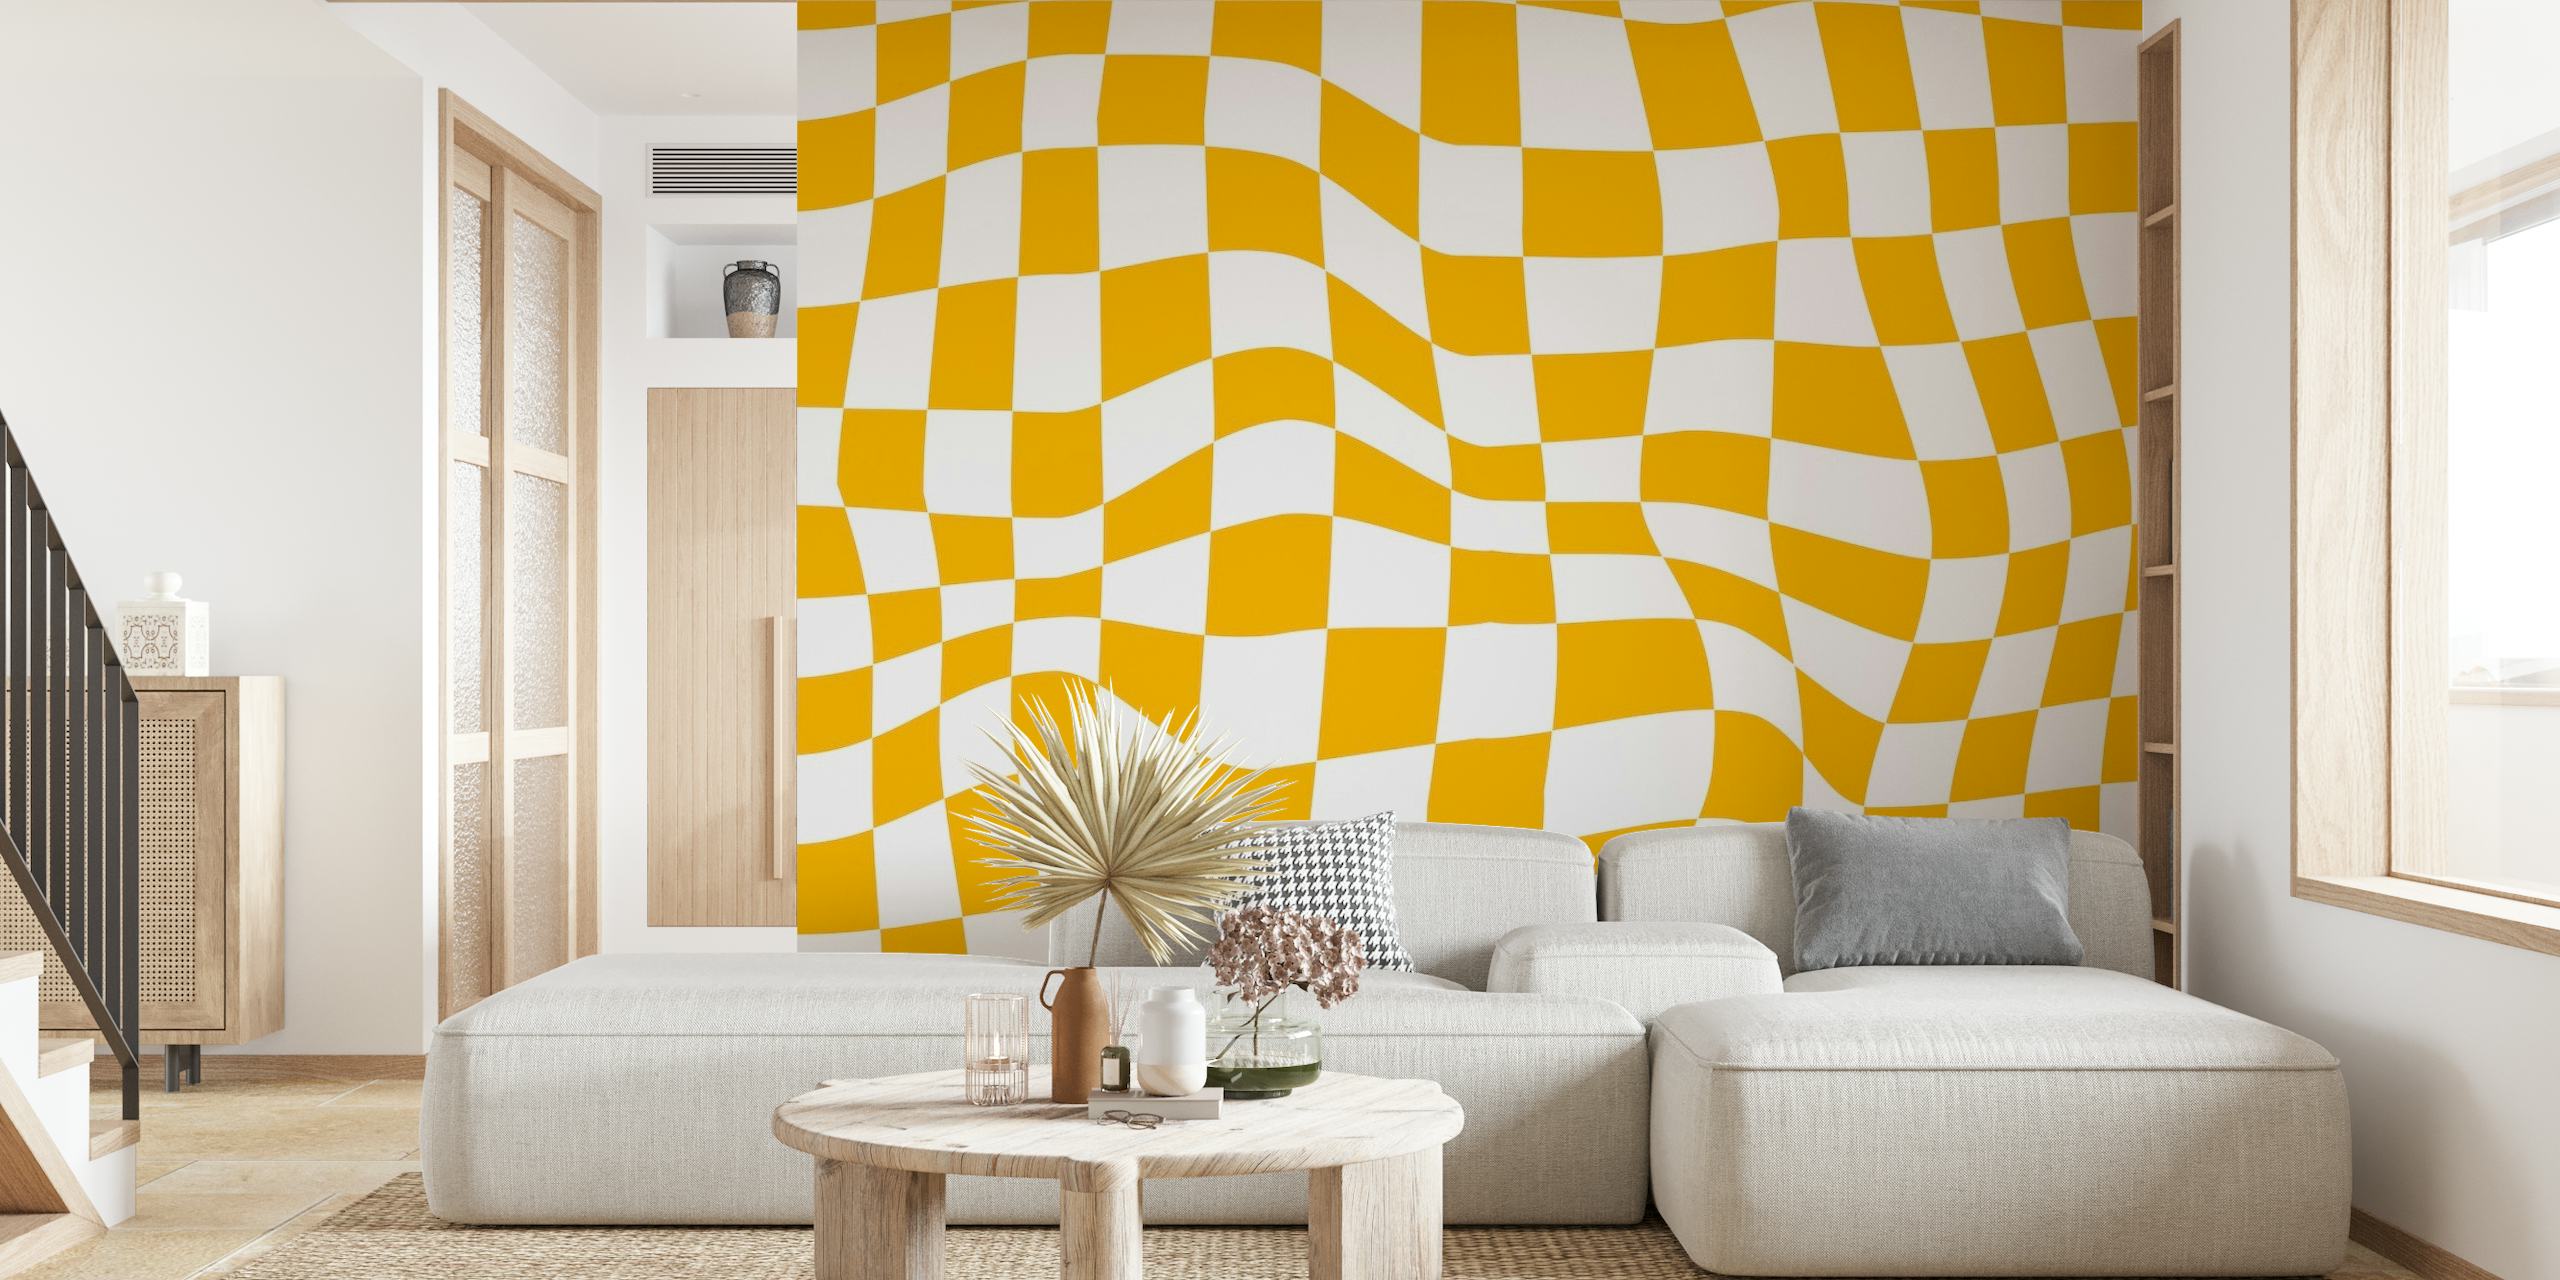 Keltainen ja valkoinen retroruutukuvioinen seinämaalaus, joka herättää 60- ja 70-luvun tunnelmaa